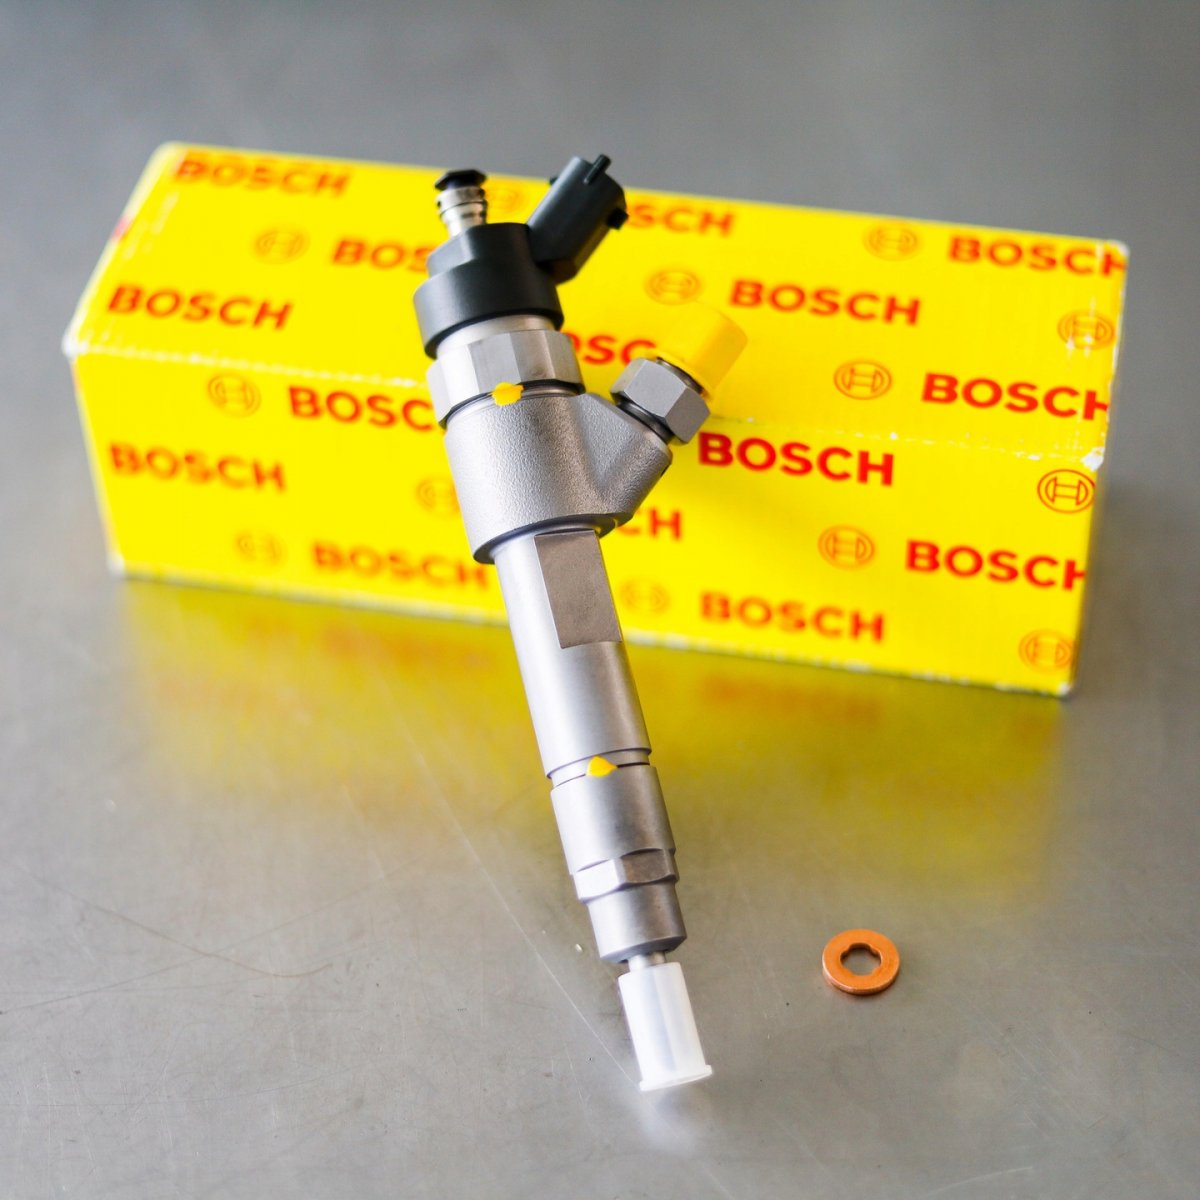 Wtryskiwacz Bosch po naprawie przygotowany do wysyłki do Klienta z gwarancją na 2 lata w dobrej cenie